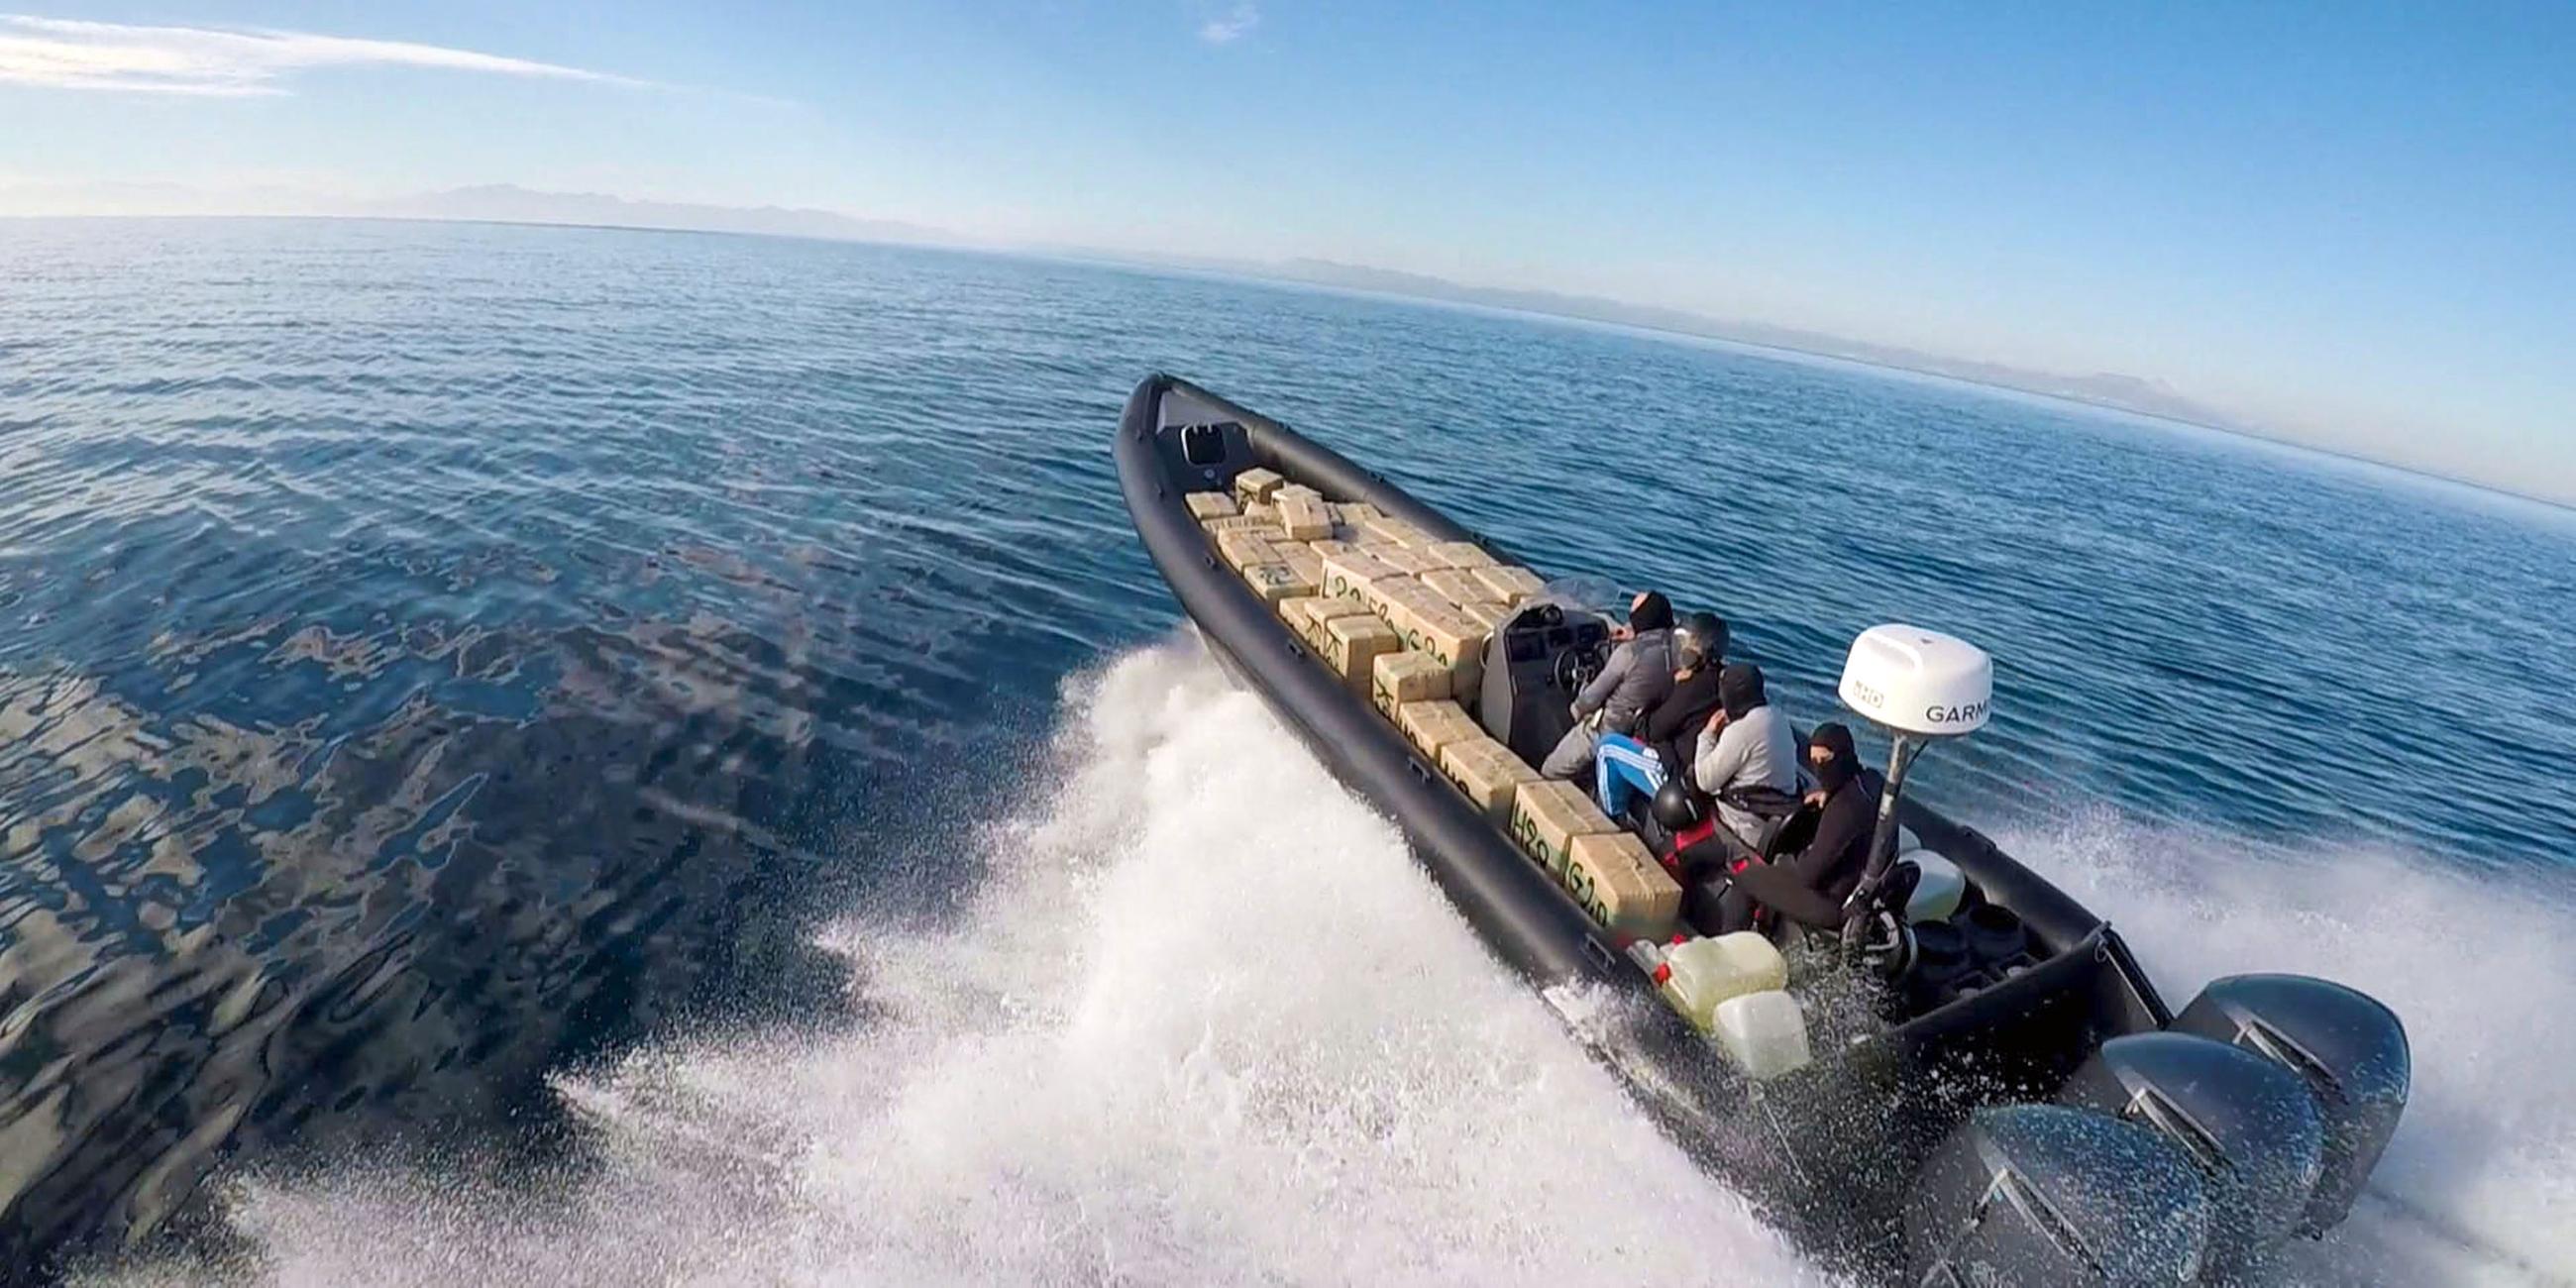 "Europas Drogentor - Spanien im Kampf gegen Schmuggler": Vier vermummte Personen auf einem kleinen Schnellboot voller Drogenpakete auf dem Meer.